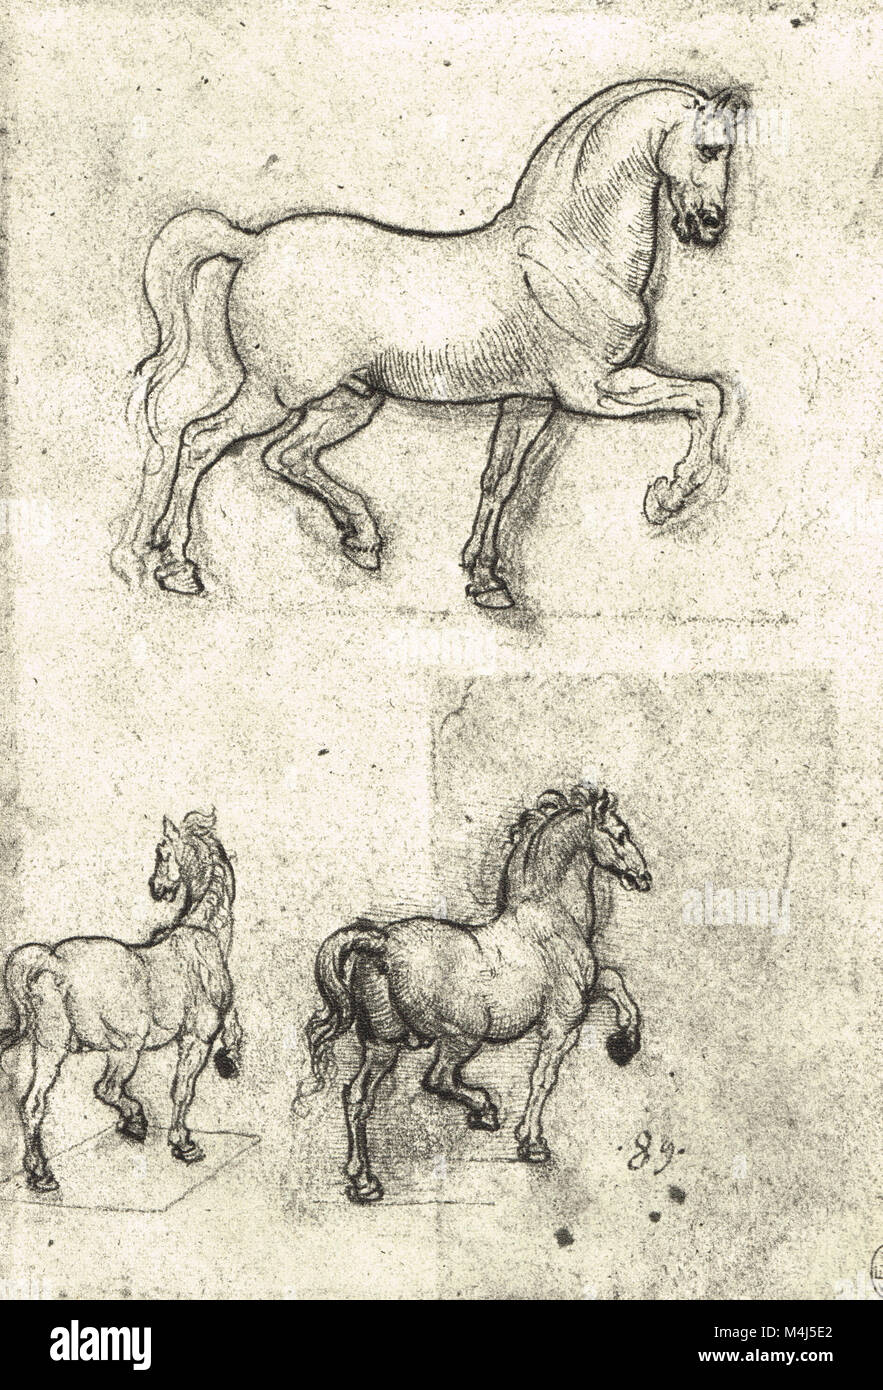 Trois études de chevaux, chevaux, dessin anatomique dessiné par Léonard de Vinci, 1452-1519 Banque D'Images